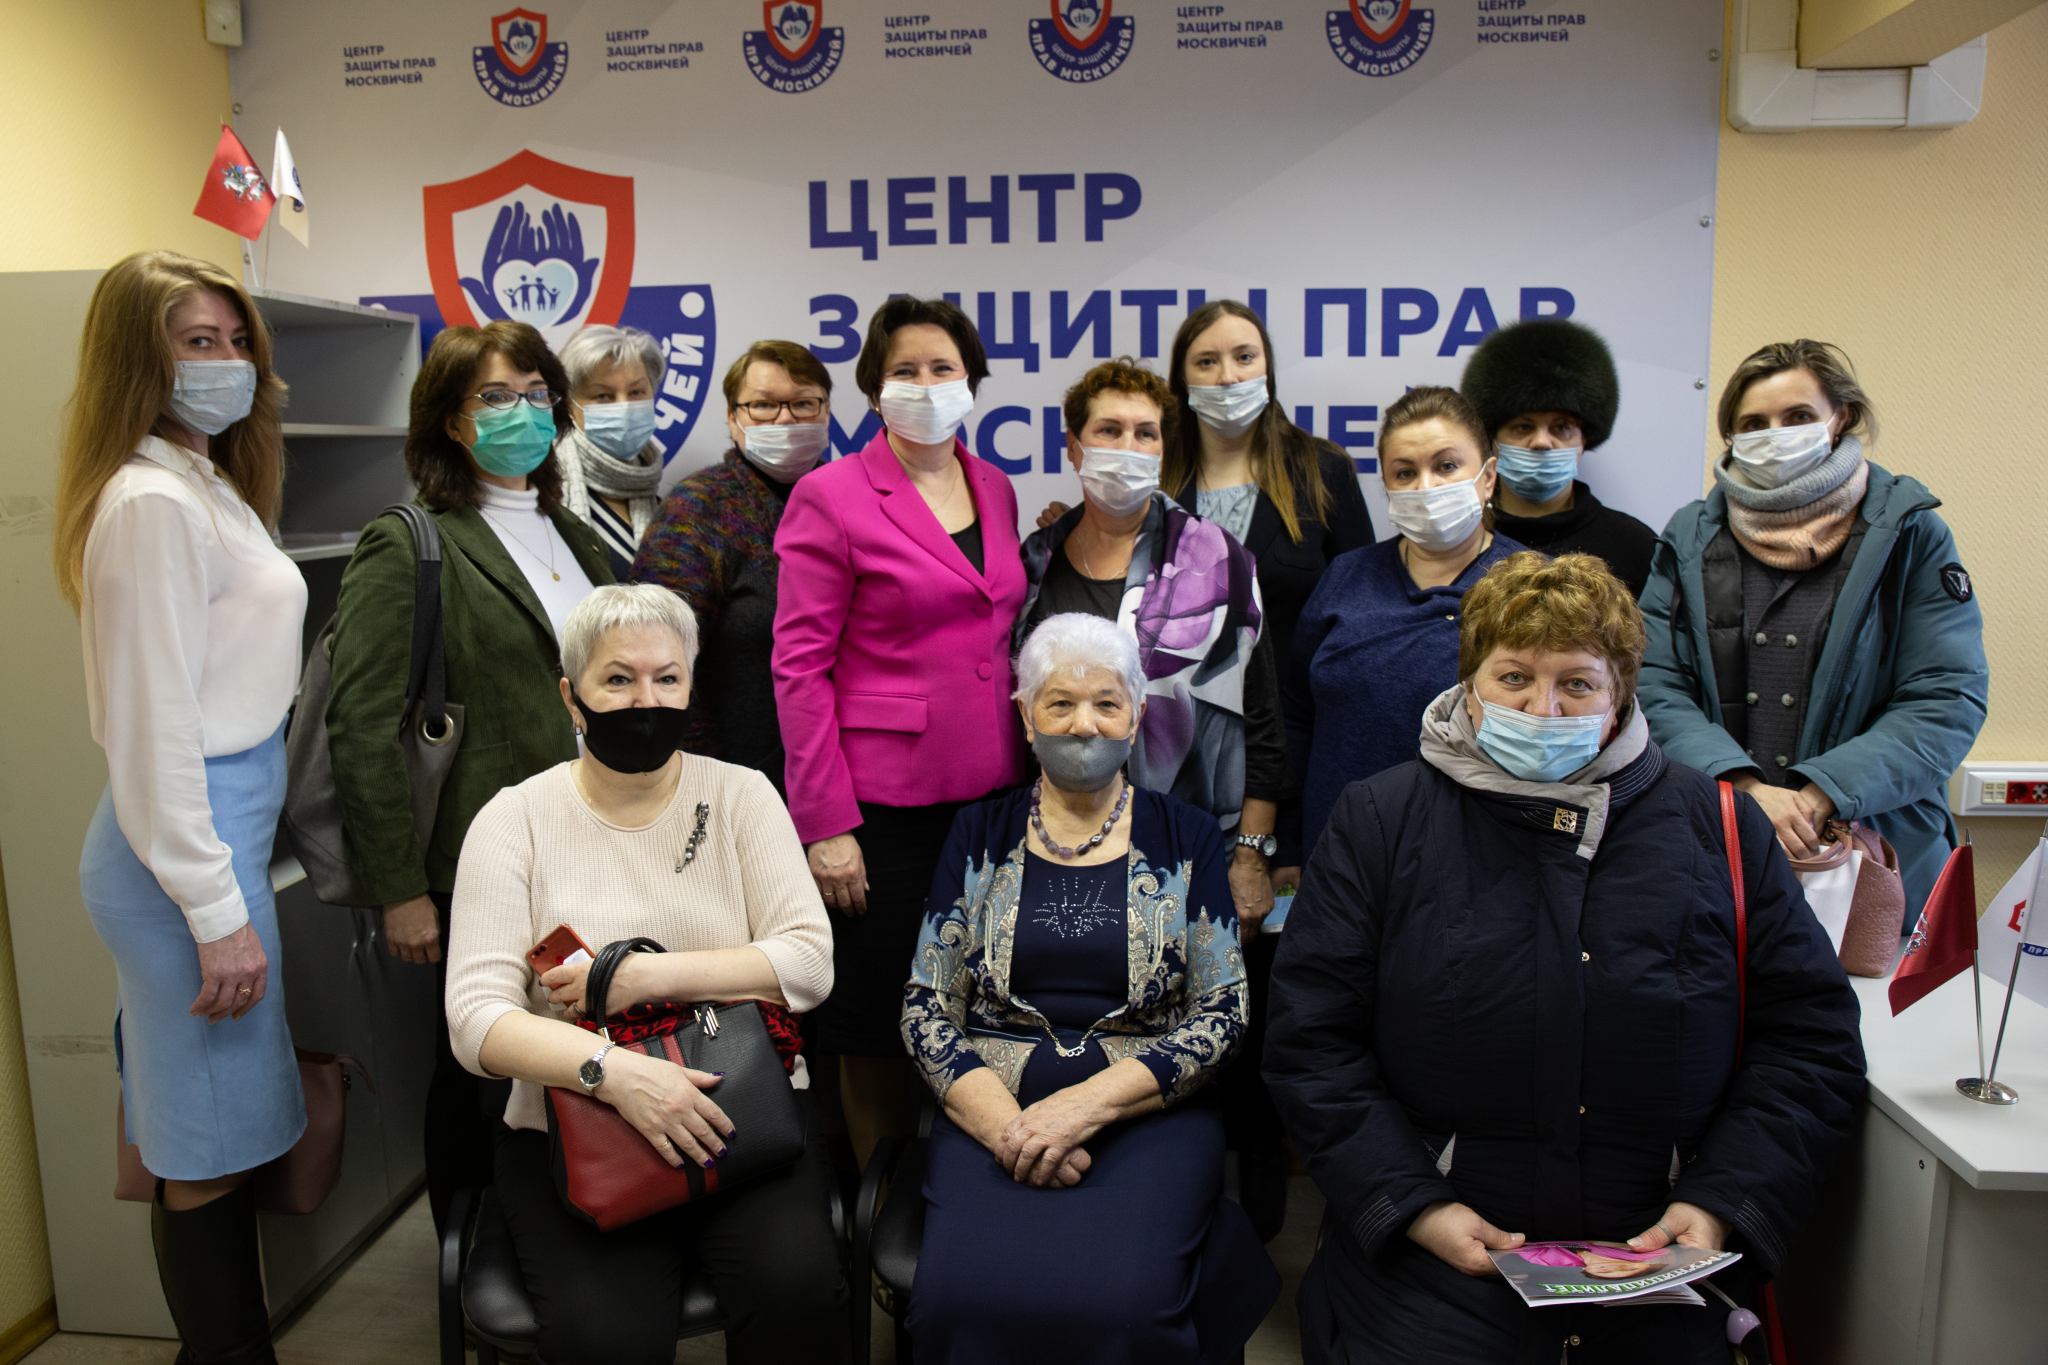 Центр защиты прав москвичей открылся в Даниловском районе